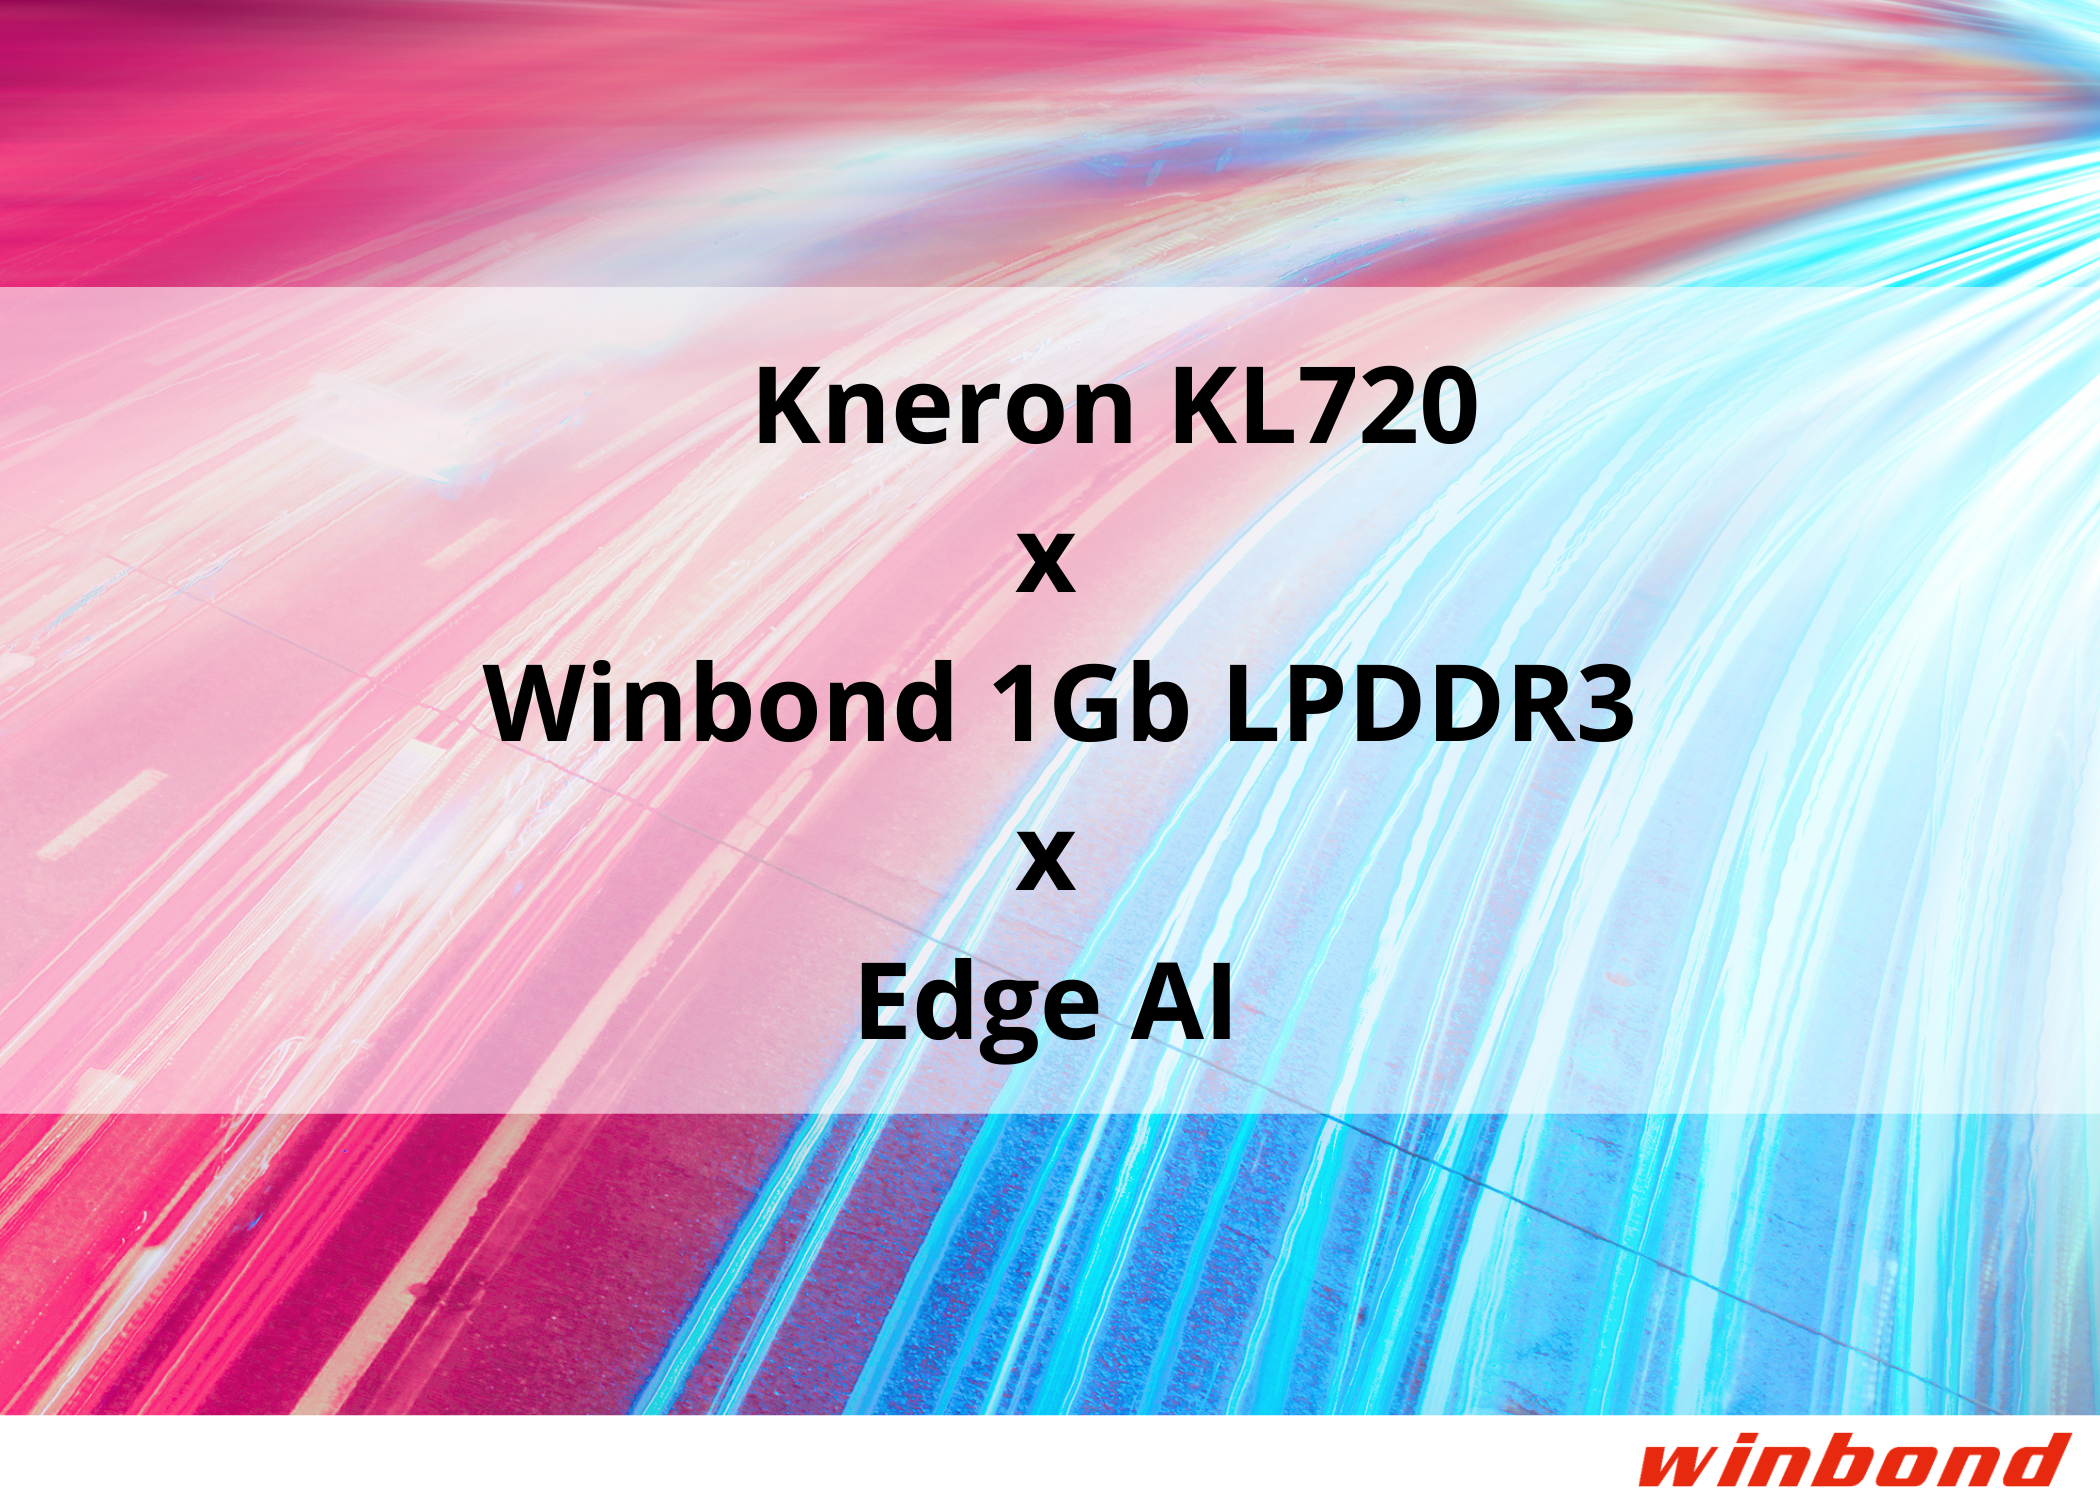 华邦高带宽1Gb LPDDR3协助最新Kneron KL720 SoC在边缘计算AI应用 